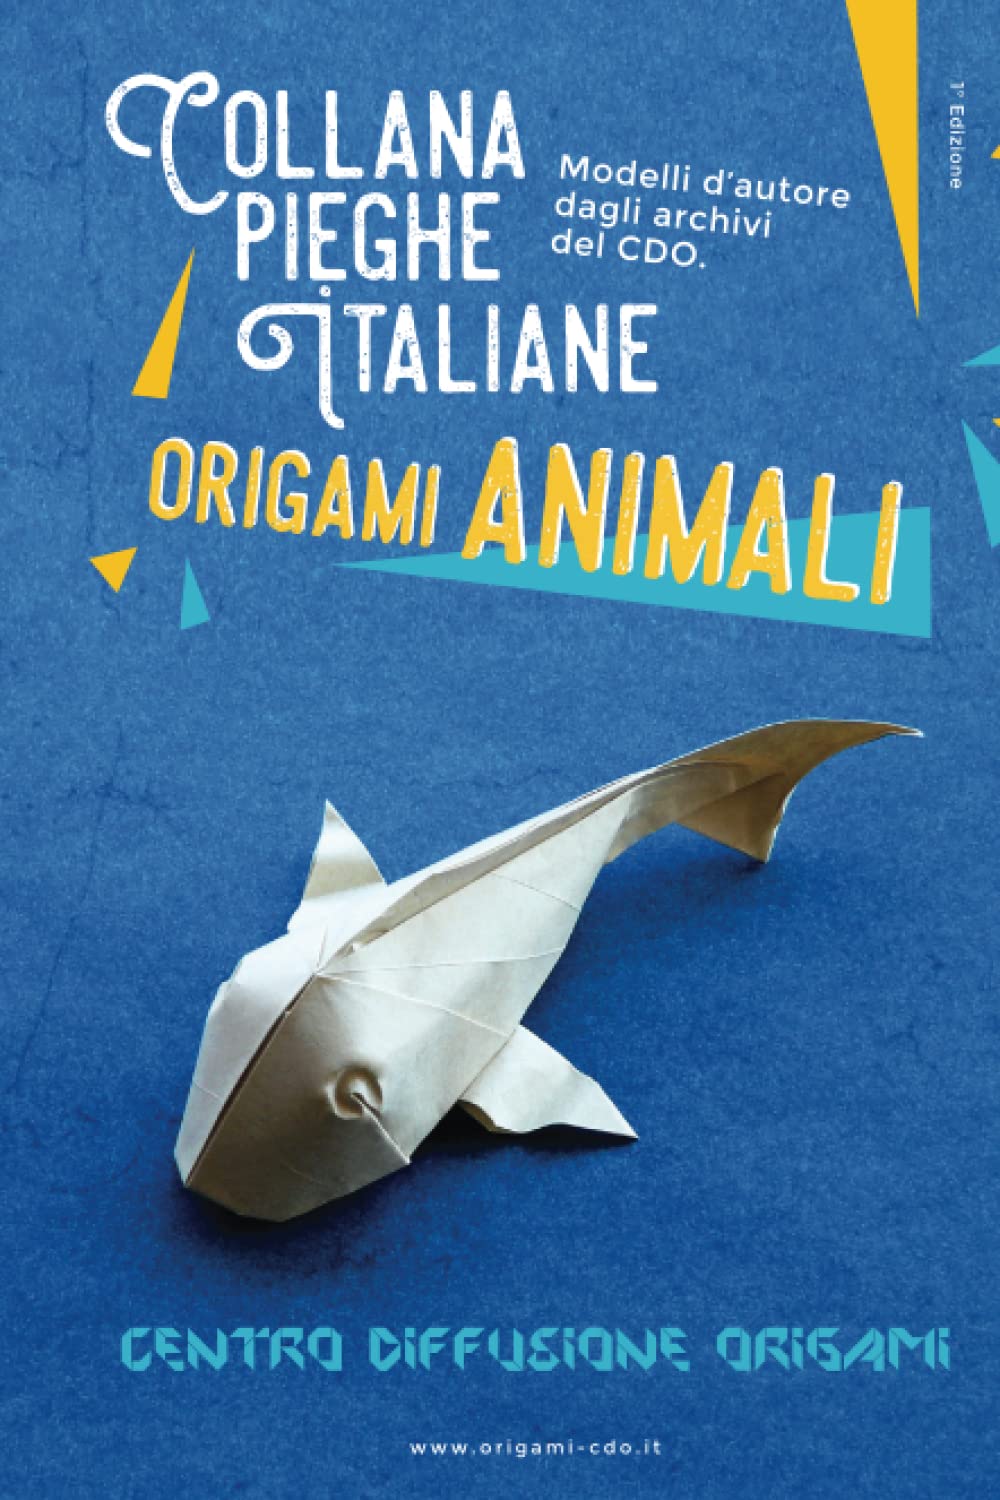 Collana pieghe Italiane - origami ANIMALI : page 112.